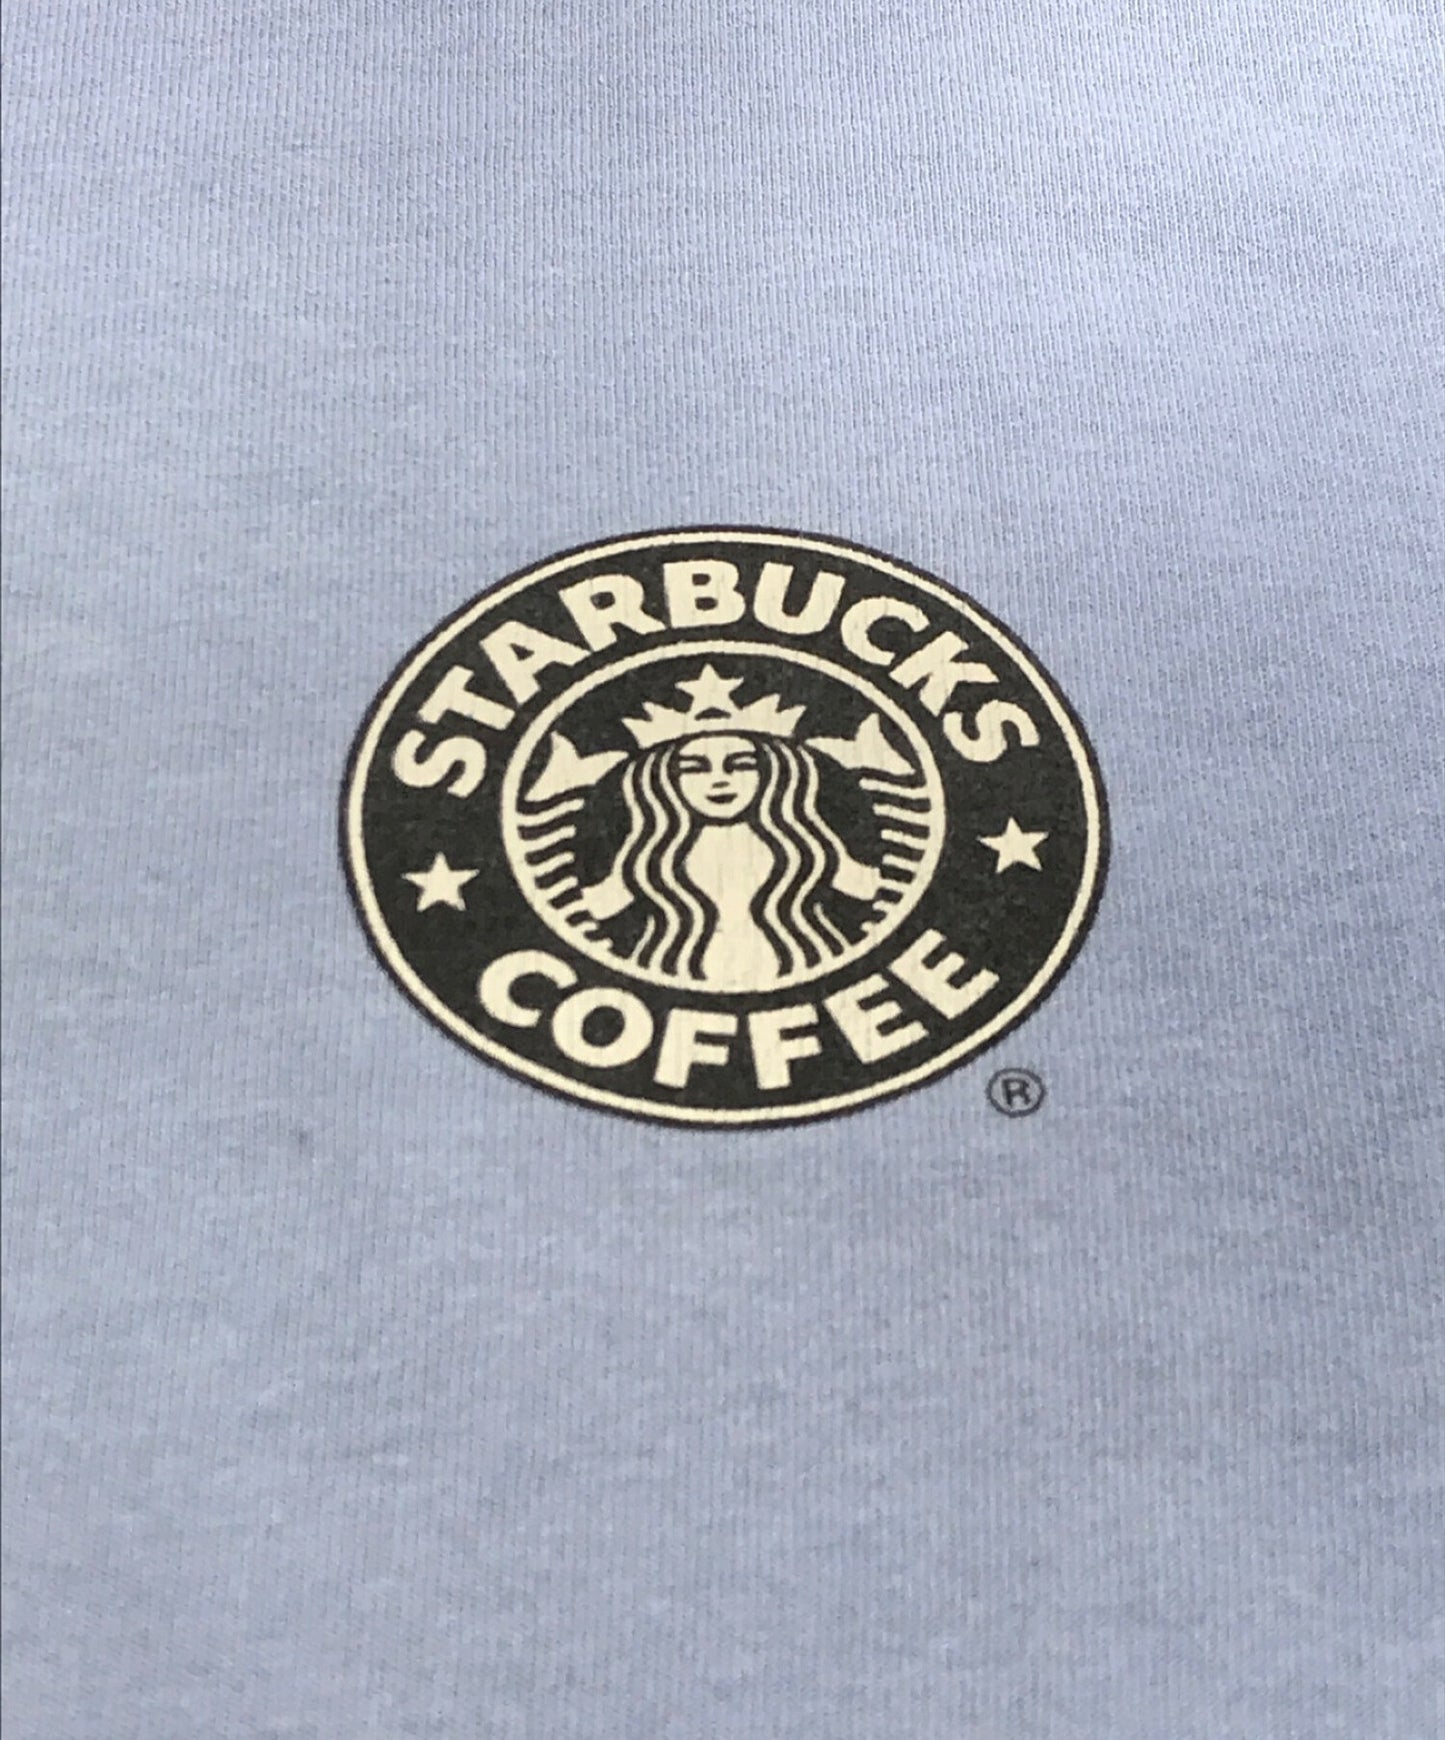 Starbucks Coffee Store Tee